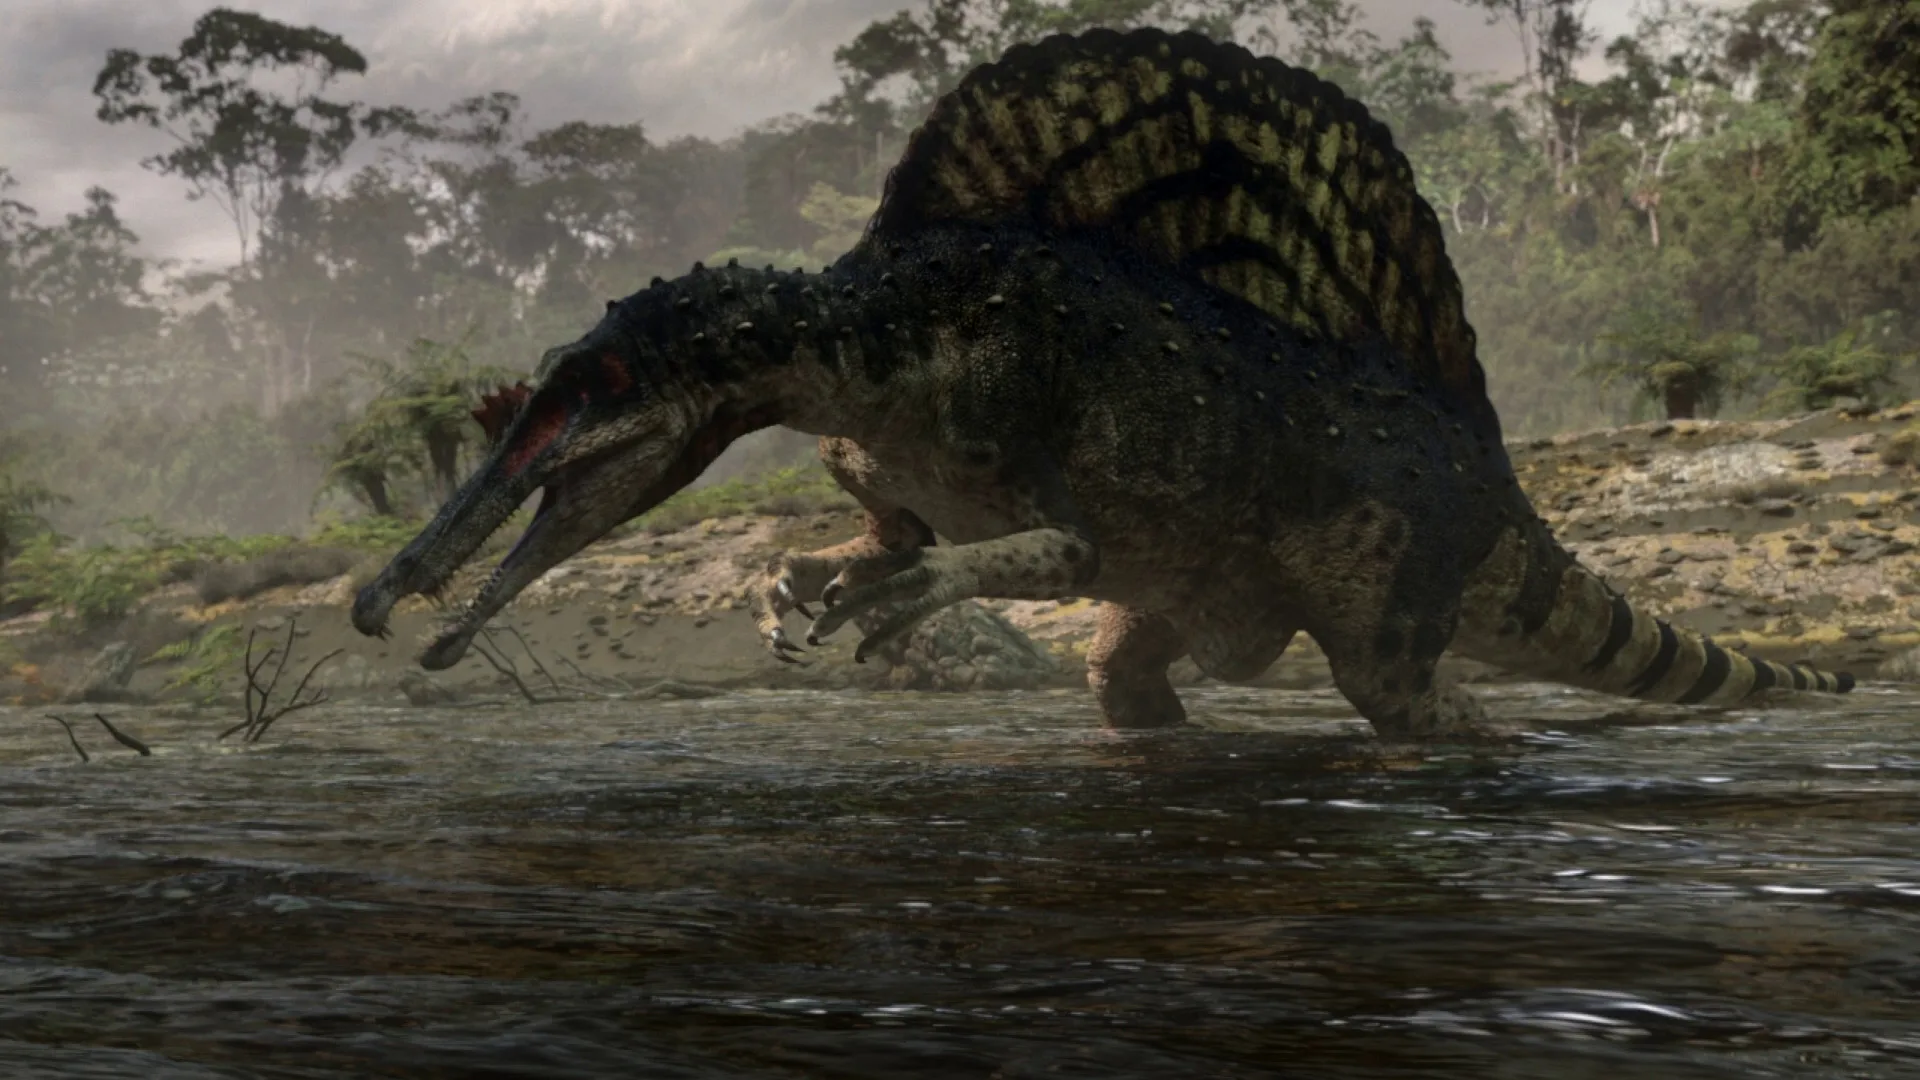 跟前者差不多一个时间段的《恐龙星球》里的棘龙倒是稍微科学了一些，战斗力也下降了不少，被帝鳄赶跑，被鲨齿龙咬断背棘（根据一个化石孤例），上岸只能抢腐肉，植食恐龙都吓不跑……